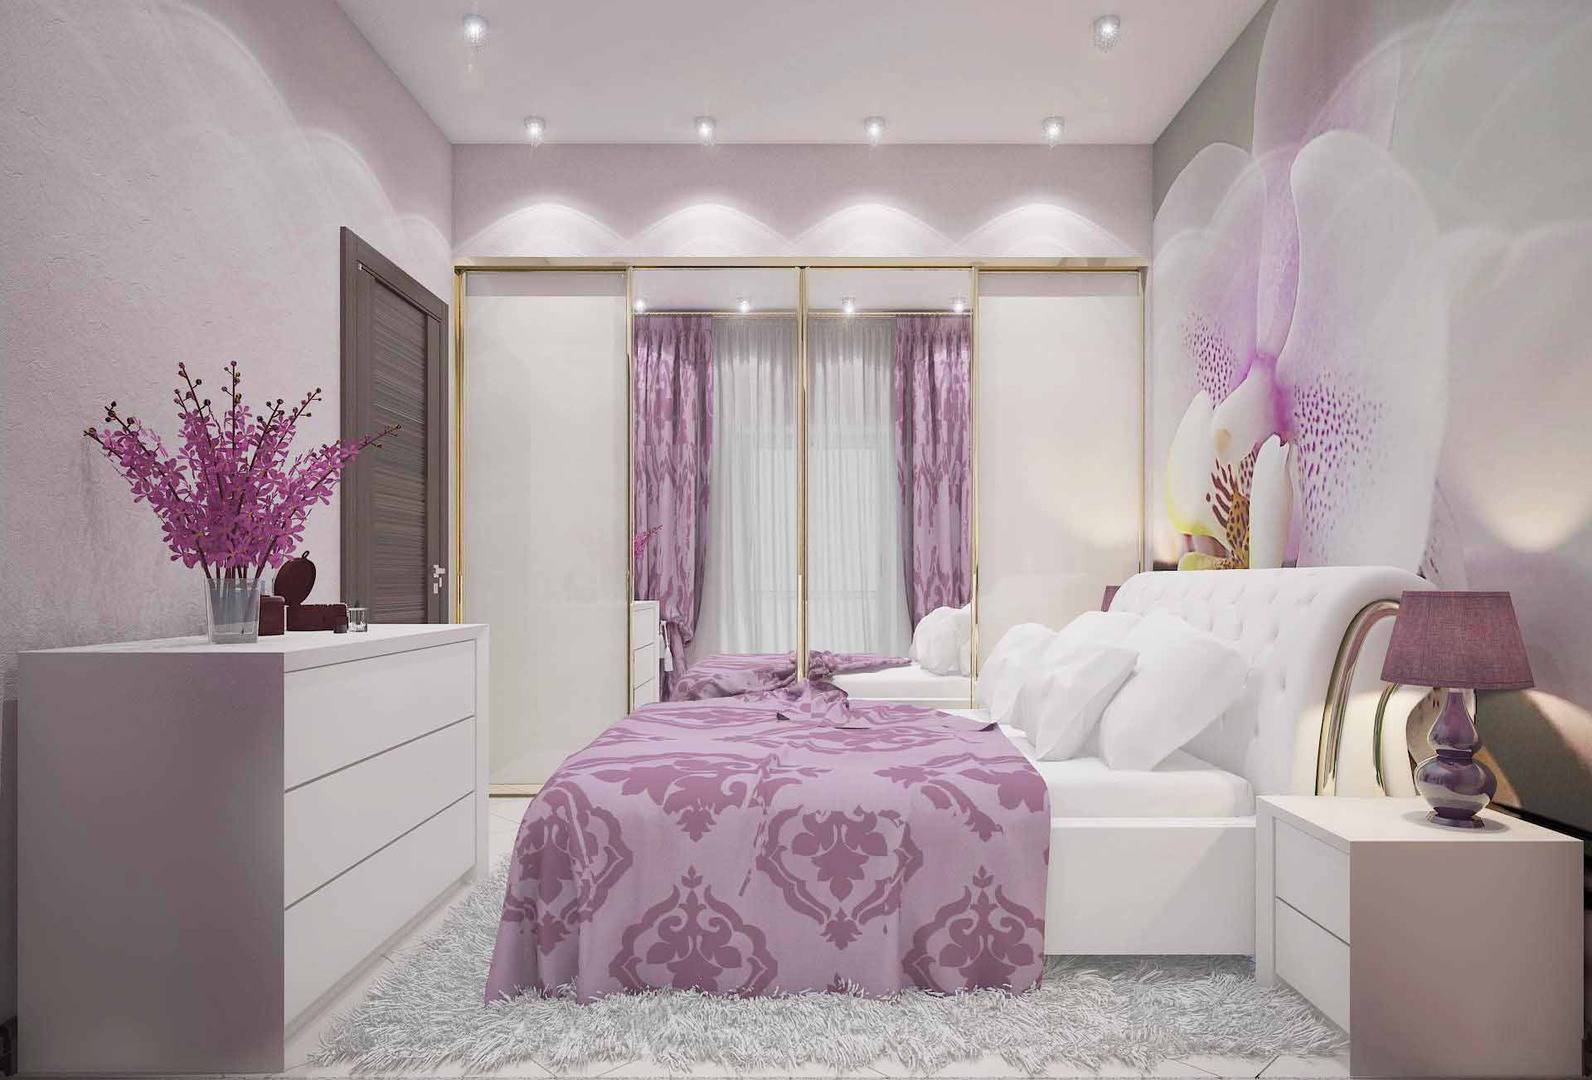 Фиолетовая спальня - 150 фото лучших новинок дизайна спальни фиолетового цвета